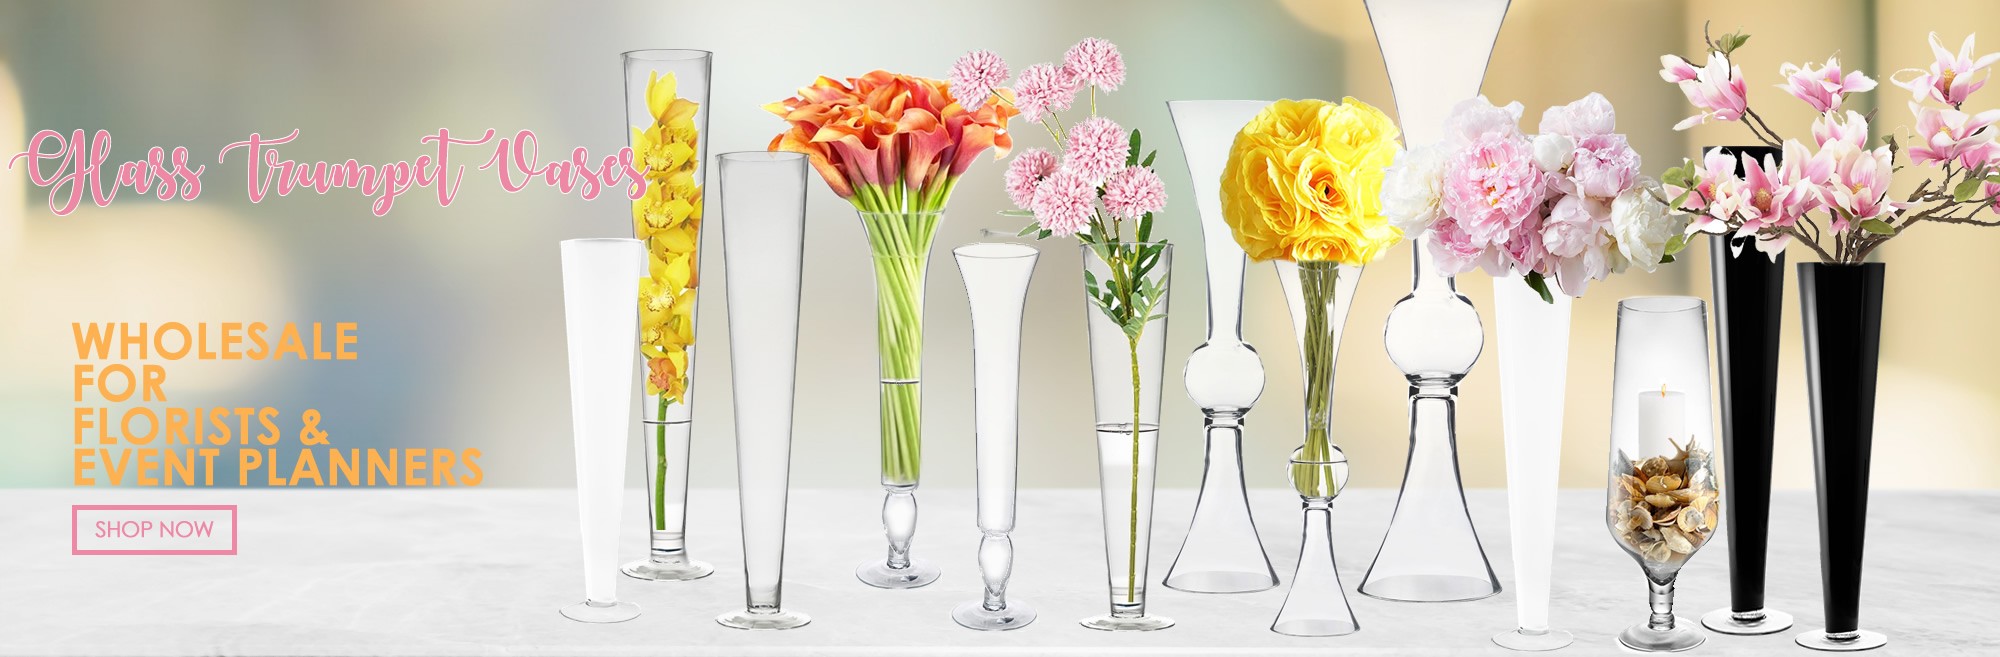 Click to view more terrarium vases